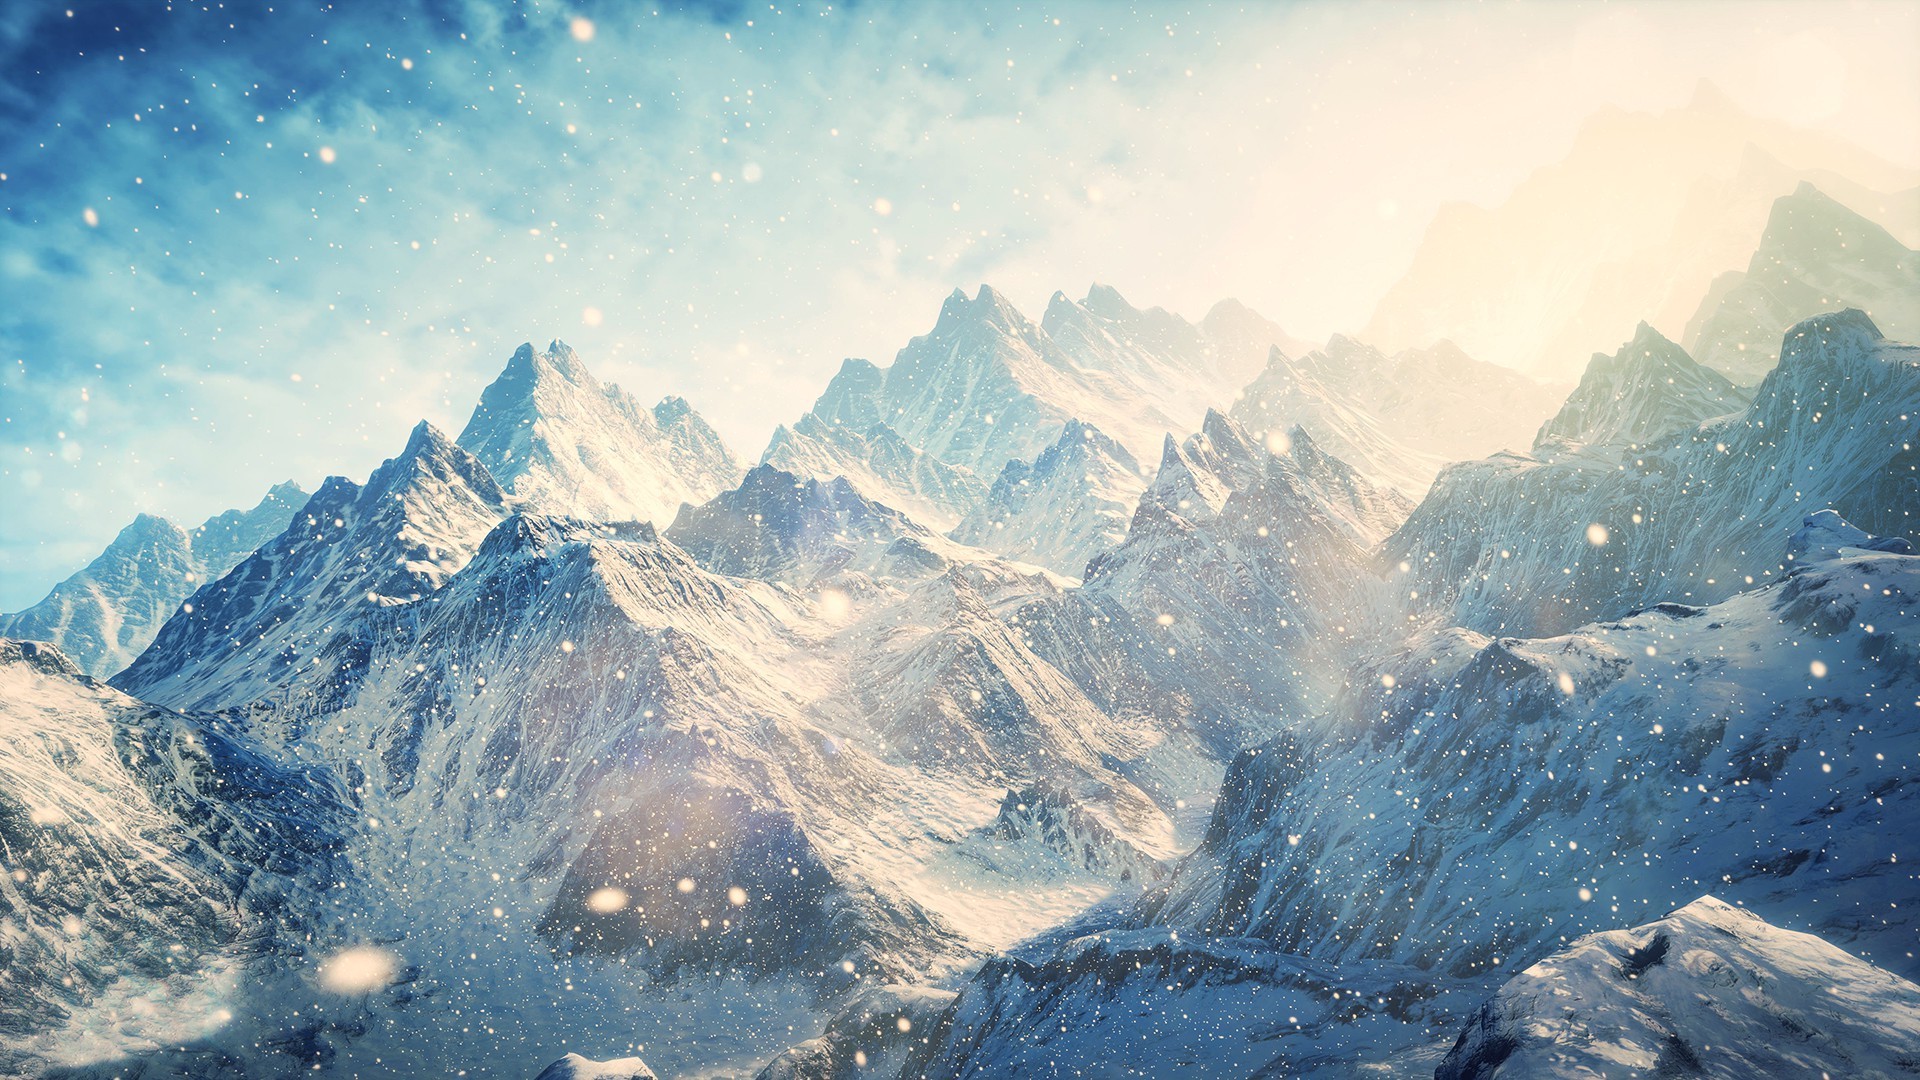 Nature & Landscape Snow Mountains wallpapers (Desktop, Phone, Tablet ...